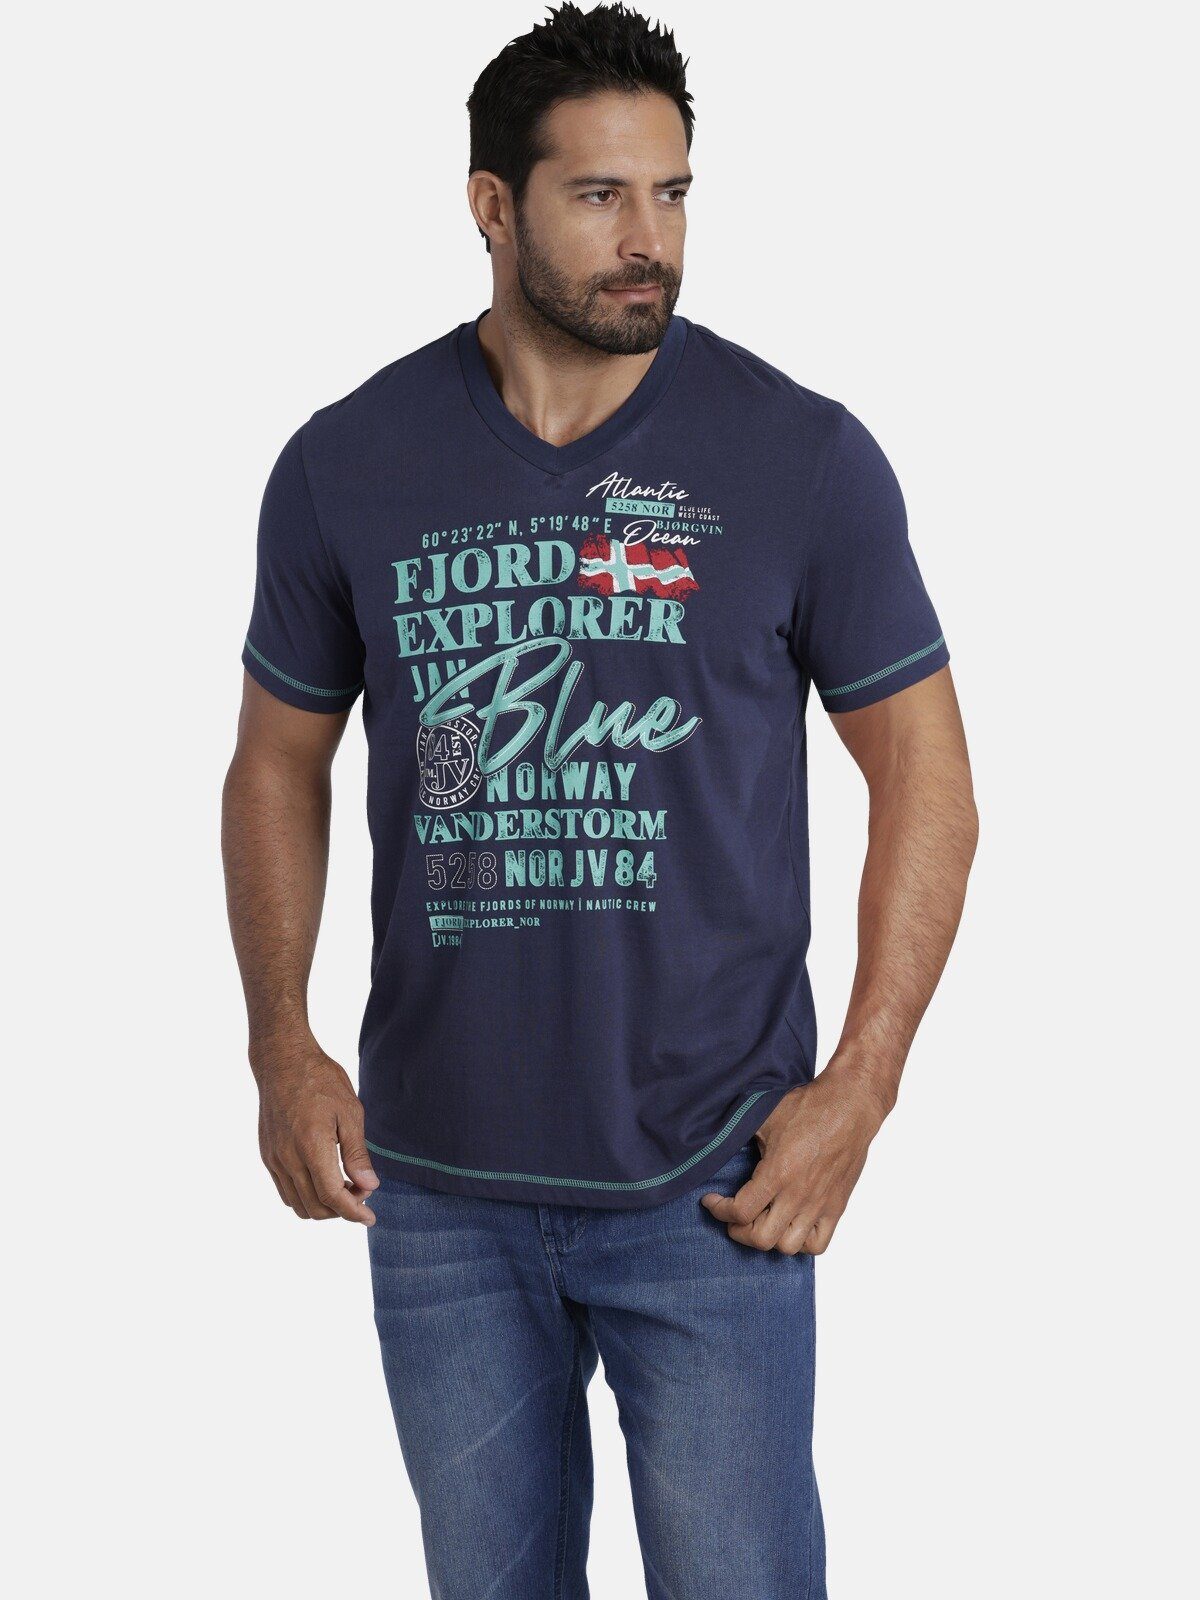 Jan Vanderstorm T-Shirt NORDGER aus reiner Baumwolle dunkelblau | V-Shirts